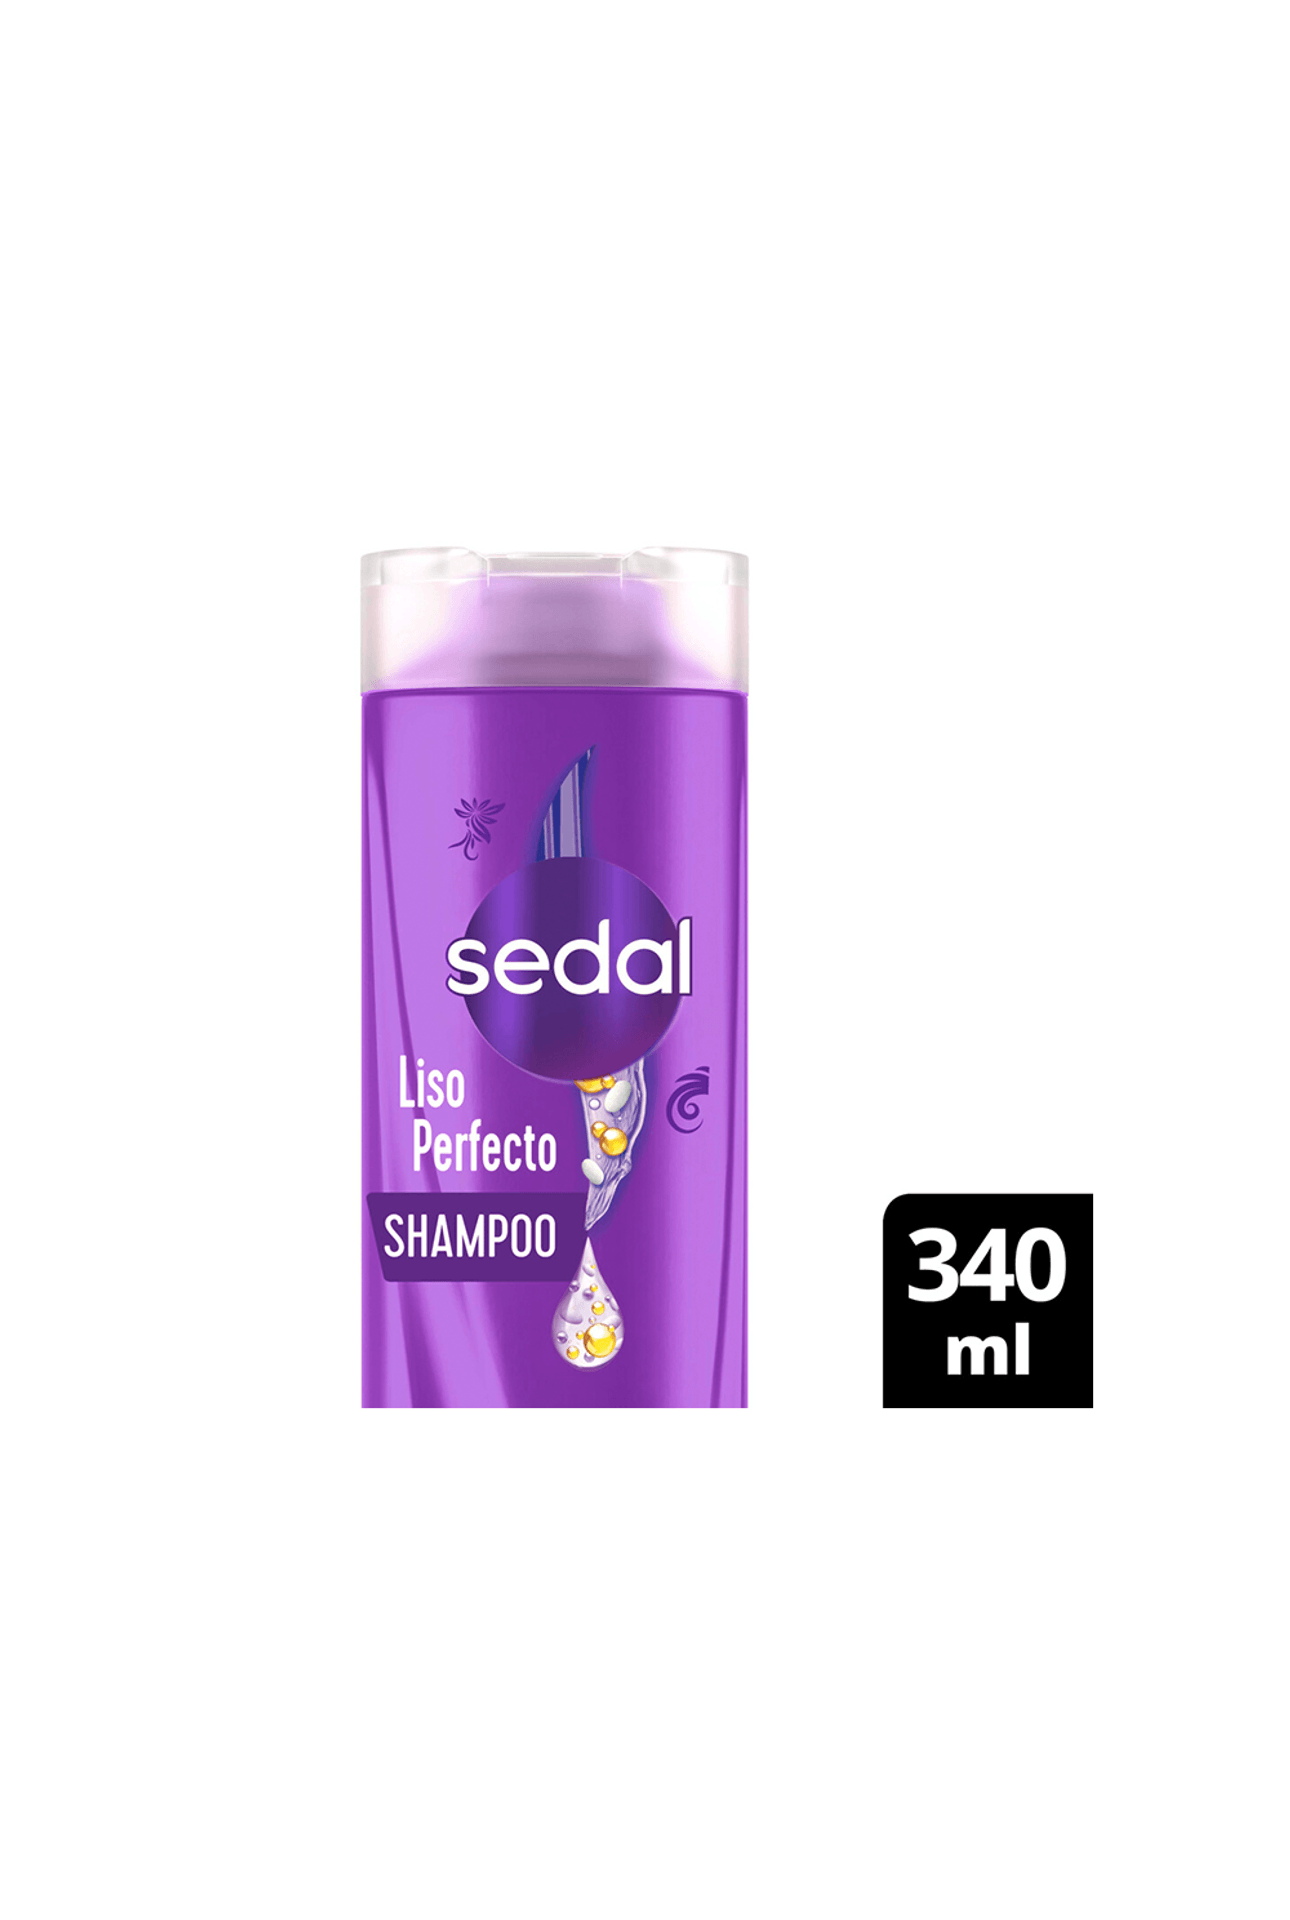 Sedal-Shampoo-Sedal-Liso-Perfecto-x-340ml-7791293045757_img1